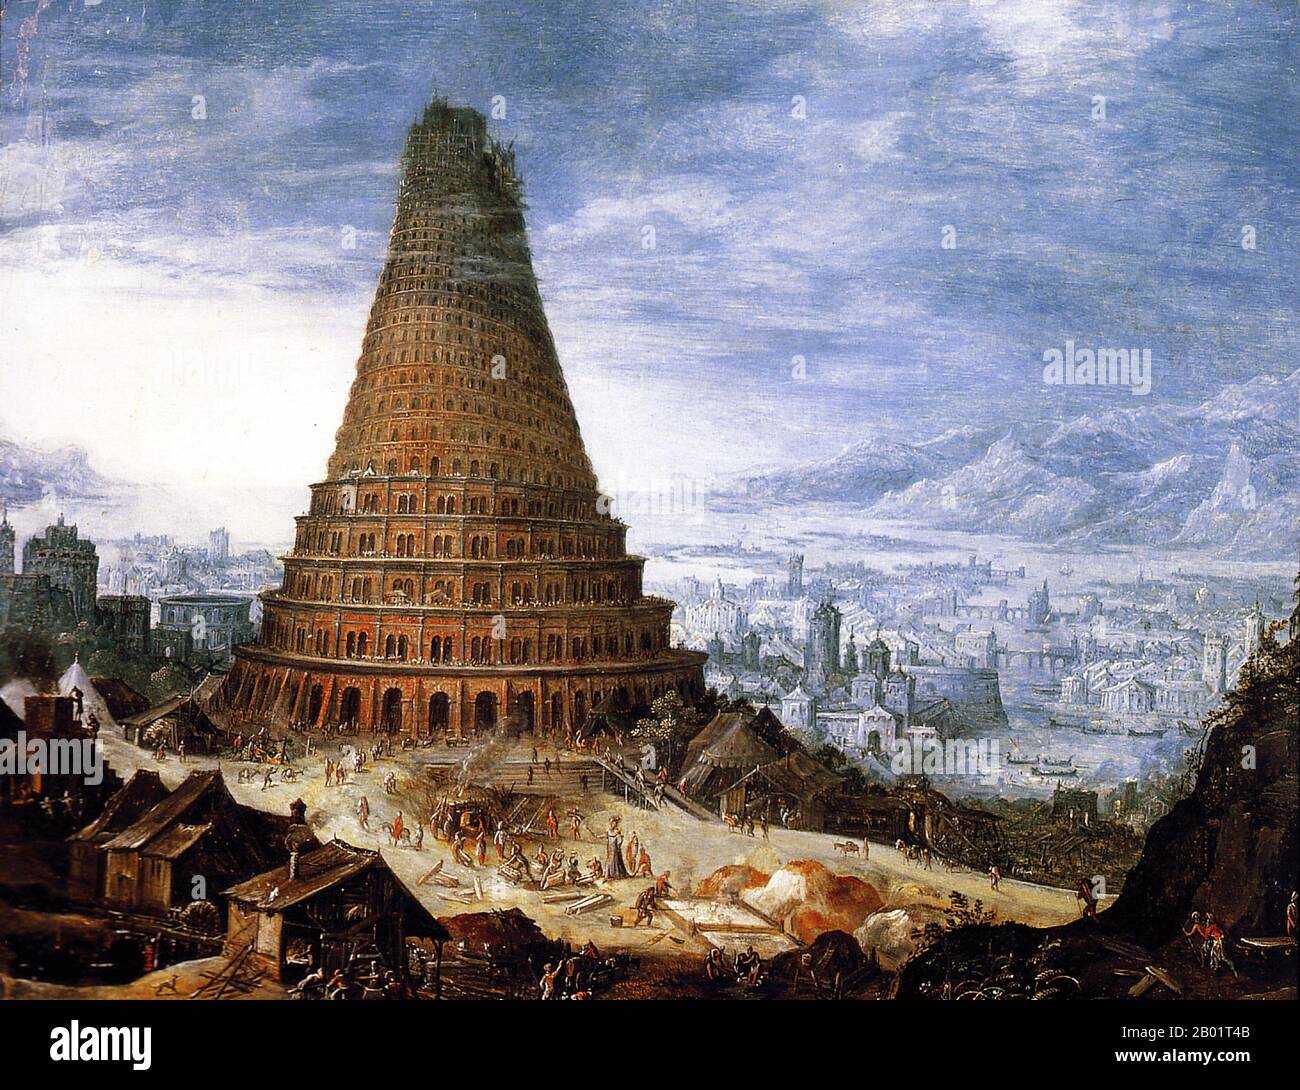 Belgien/Irak/Mesopotamien: "Das Gebäude des Turms von Babel". Ölgemälde von Pieter Bruegel dem Jüngeren (10. Oktober 1564 - 1638), 17. Jahrhundert. Der Turm von Babel war nach dem Buch Genesis ein riesiger Turm, der in der Ebene von Shinar errichtet wurde. Nach der biblischen Erzählung kam eine vereinte Menschheit der Generationen nach der Großen Flut, die eine einzige Sprache sprach und aus dem Osten auswanderte, ins Land Shinar, wo sie beschlossen, eine Stadt mit einem Turm zu bauen, „mit seiner Spitze im Himmel... damit wir nicht auf der Erde verstreut werden“. Stockfoto